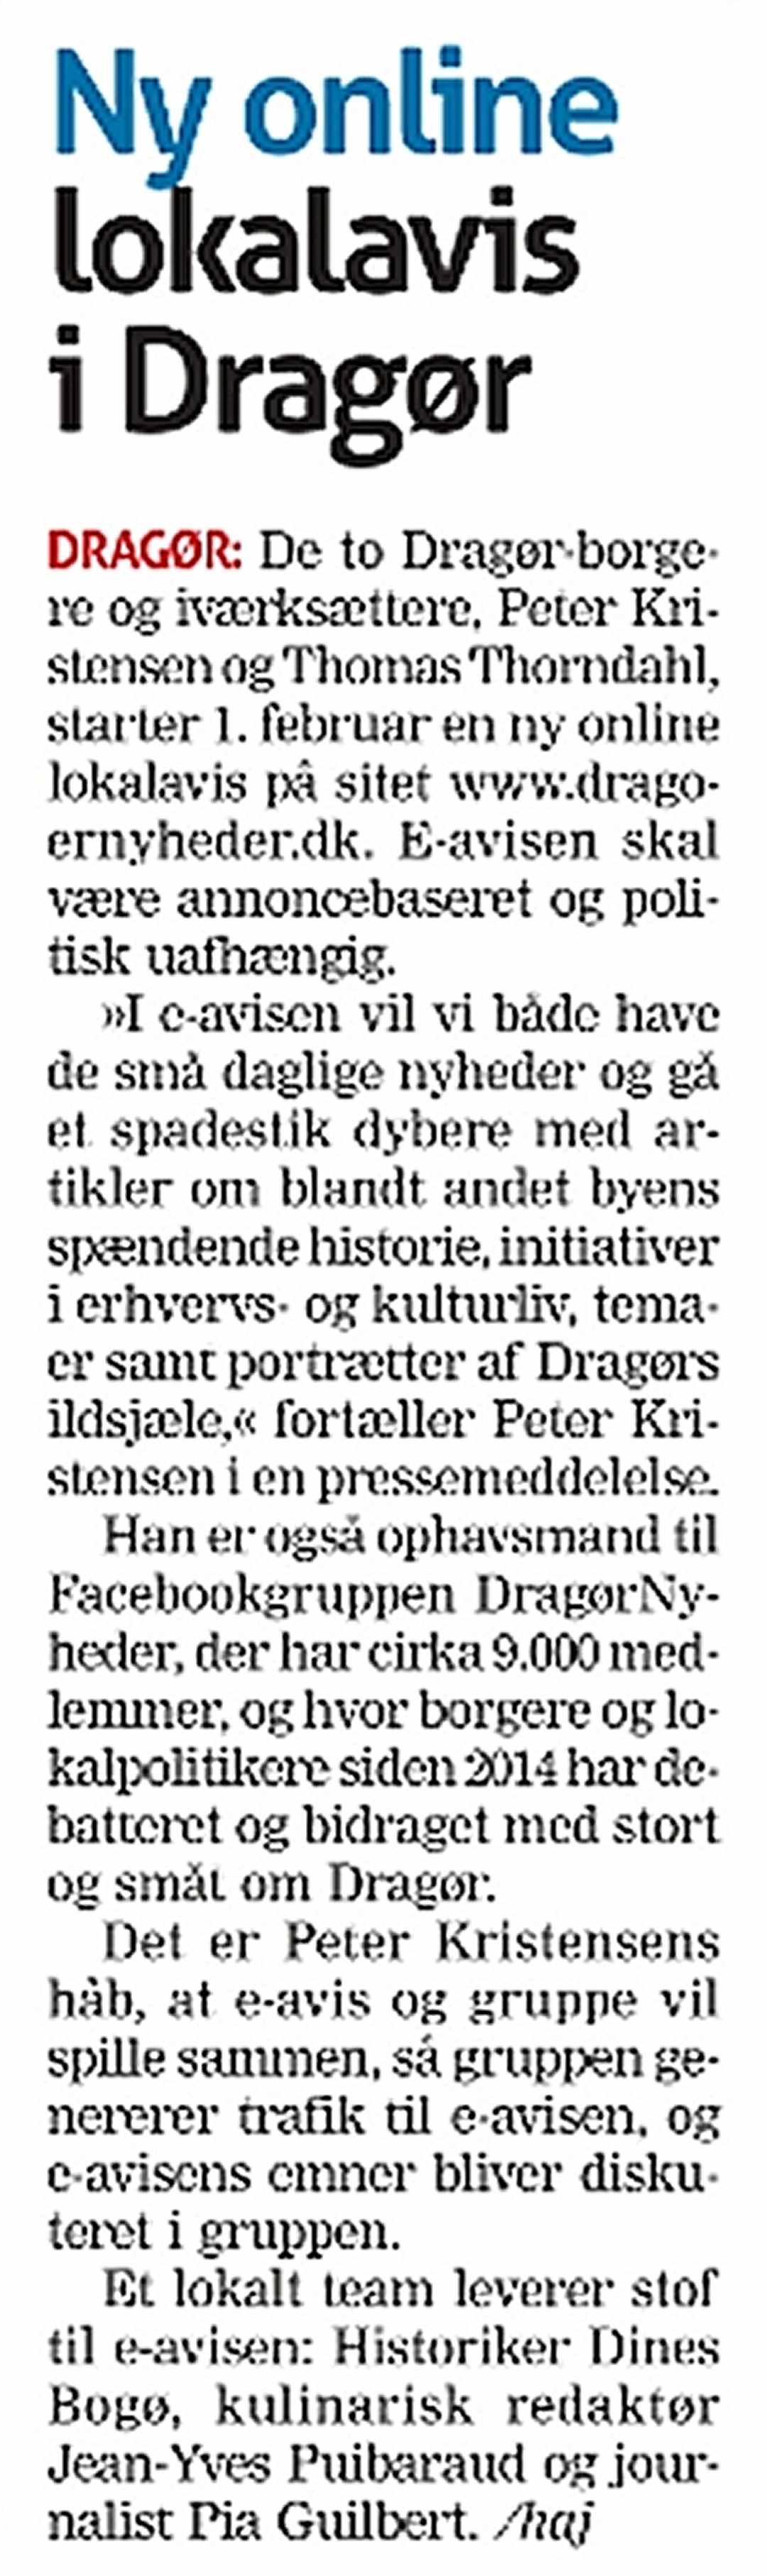 Medier om DragørNyheder.DK